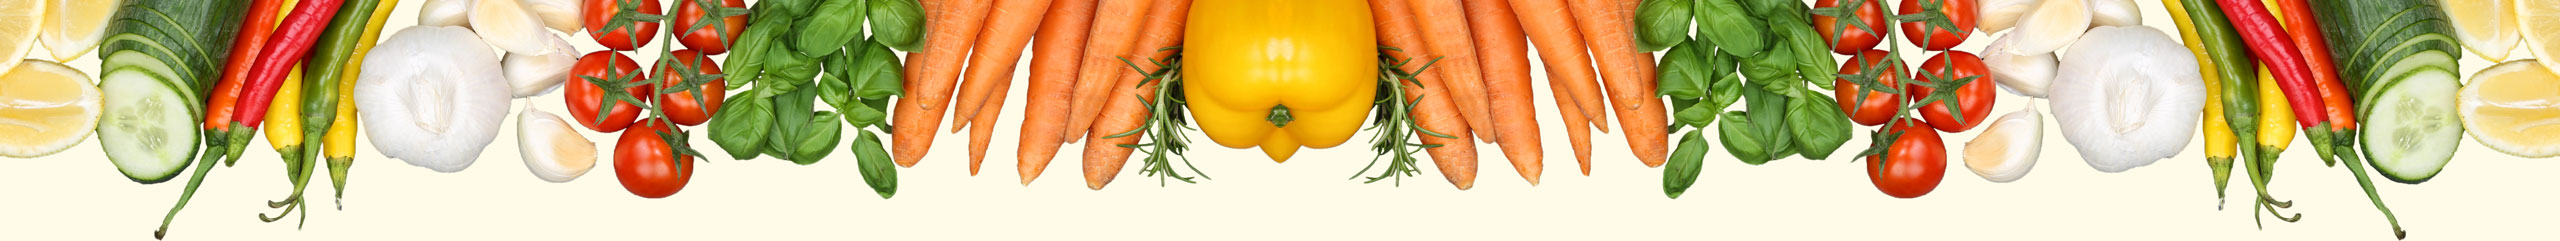 AMCookingHOT Gemüse Hintergrund oben